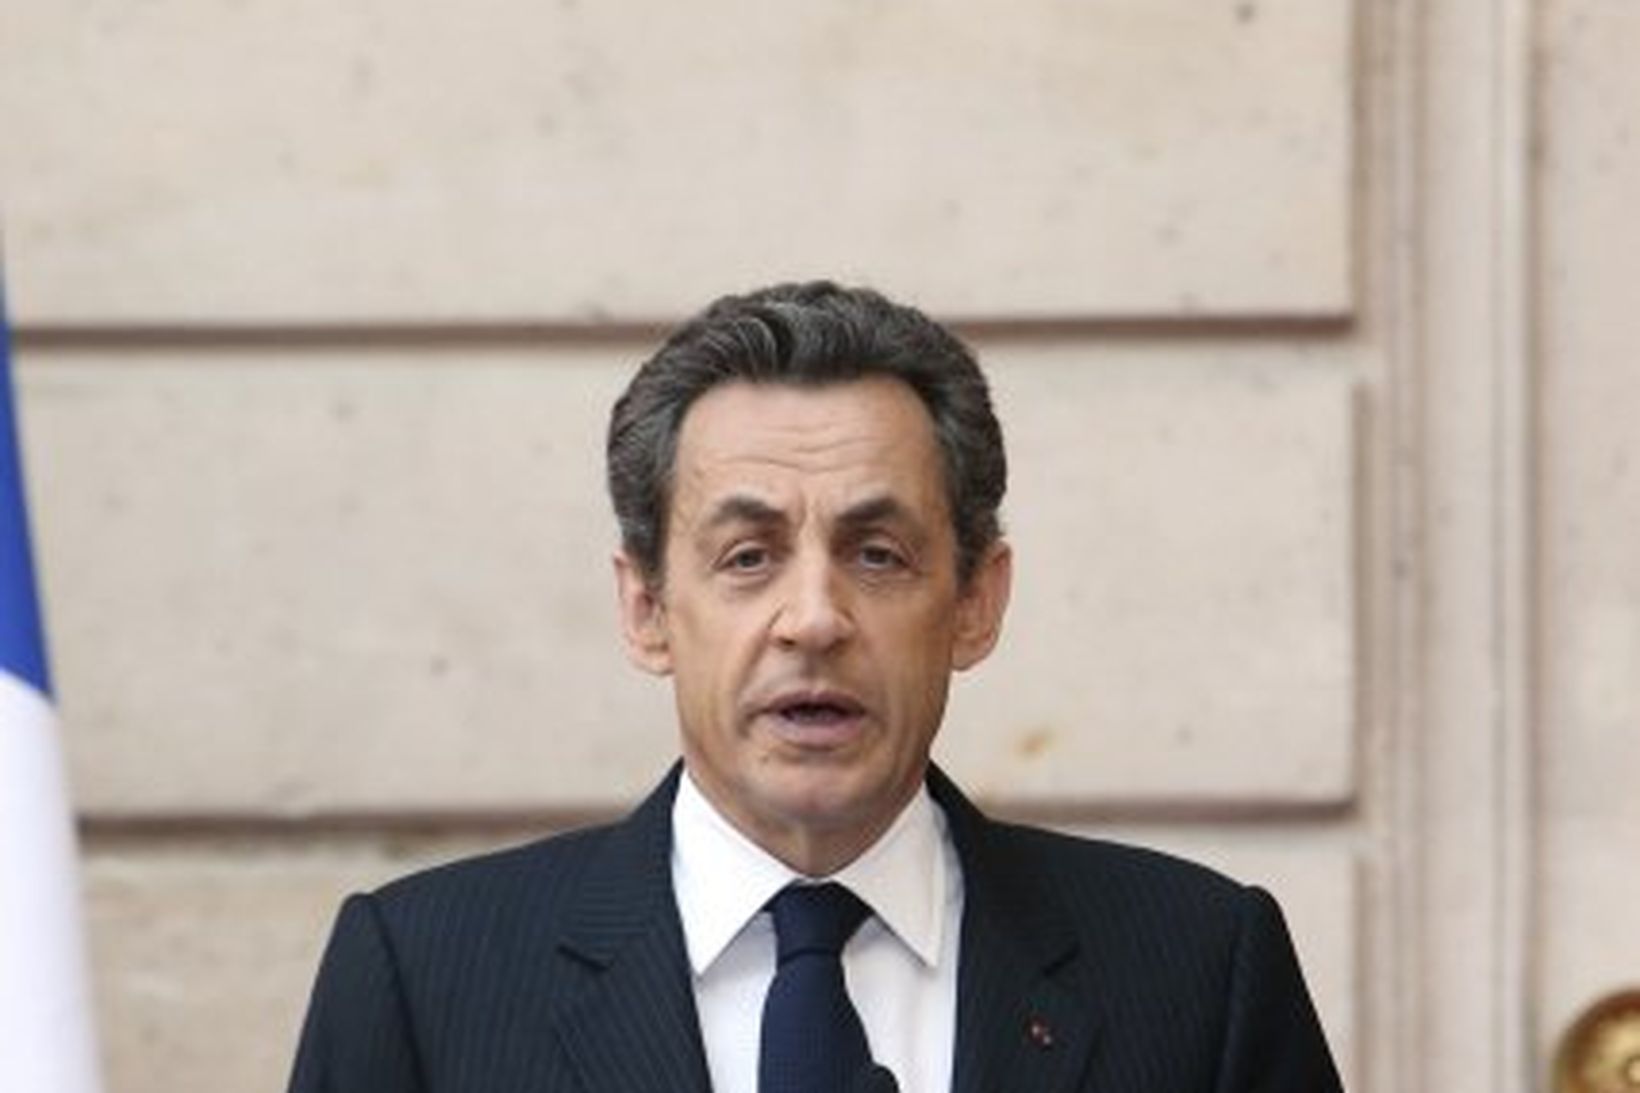 Nicolas Sarkozy forseti Frakklands